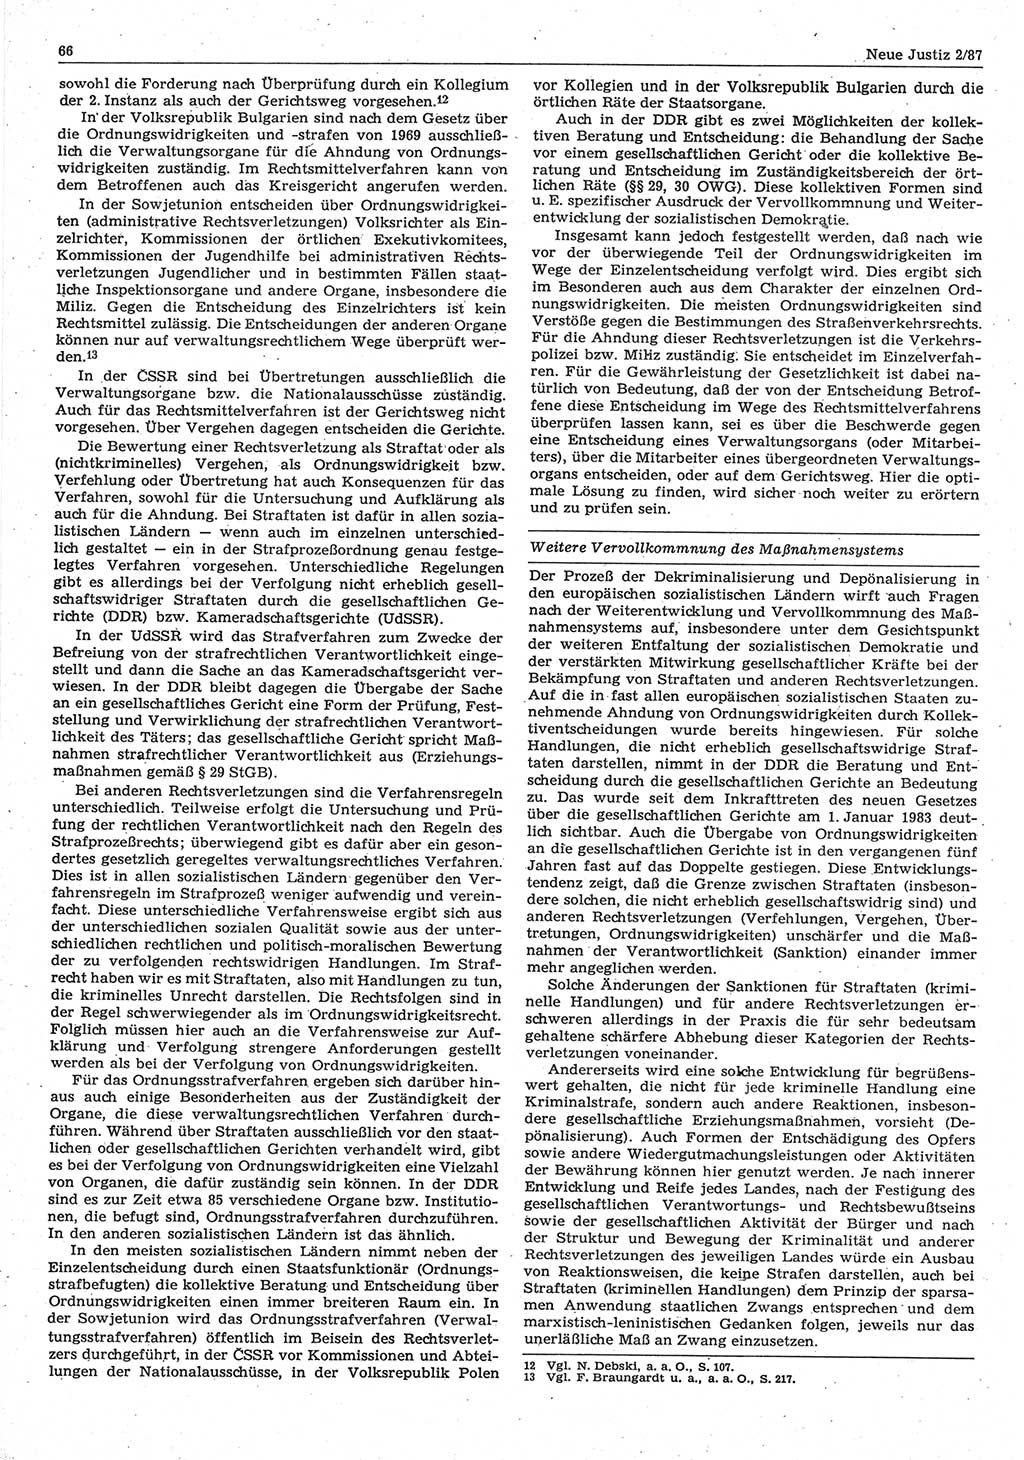 Neue Justiz (NJ), Zeitschrift für sozialistisches Recht und Gesetzlichkeit [Deutsche Demokratische Republik (DDR)], 41. Jahrgang 1987, Seite 66 (NJ DDR 1987, S. 66)